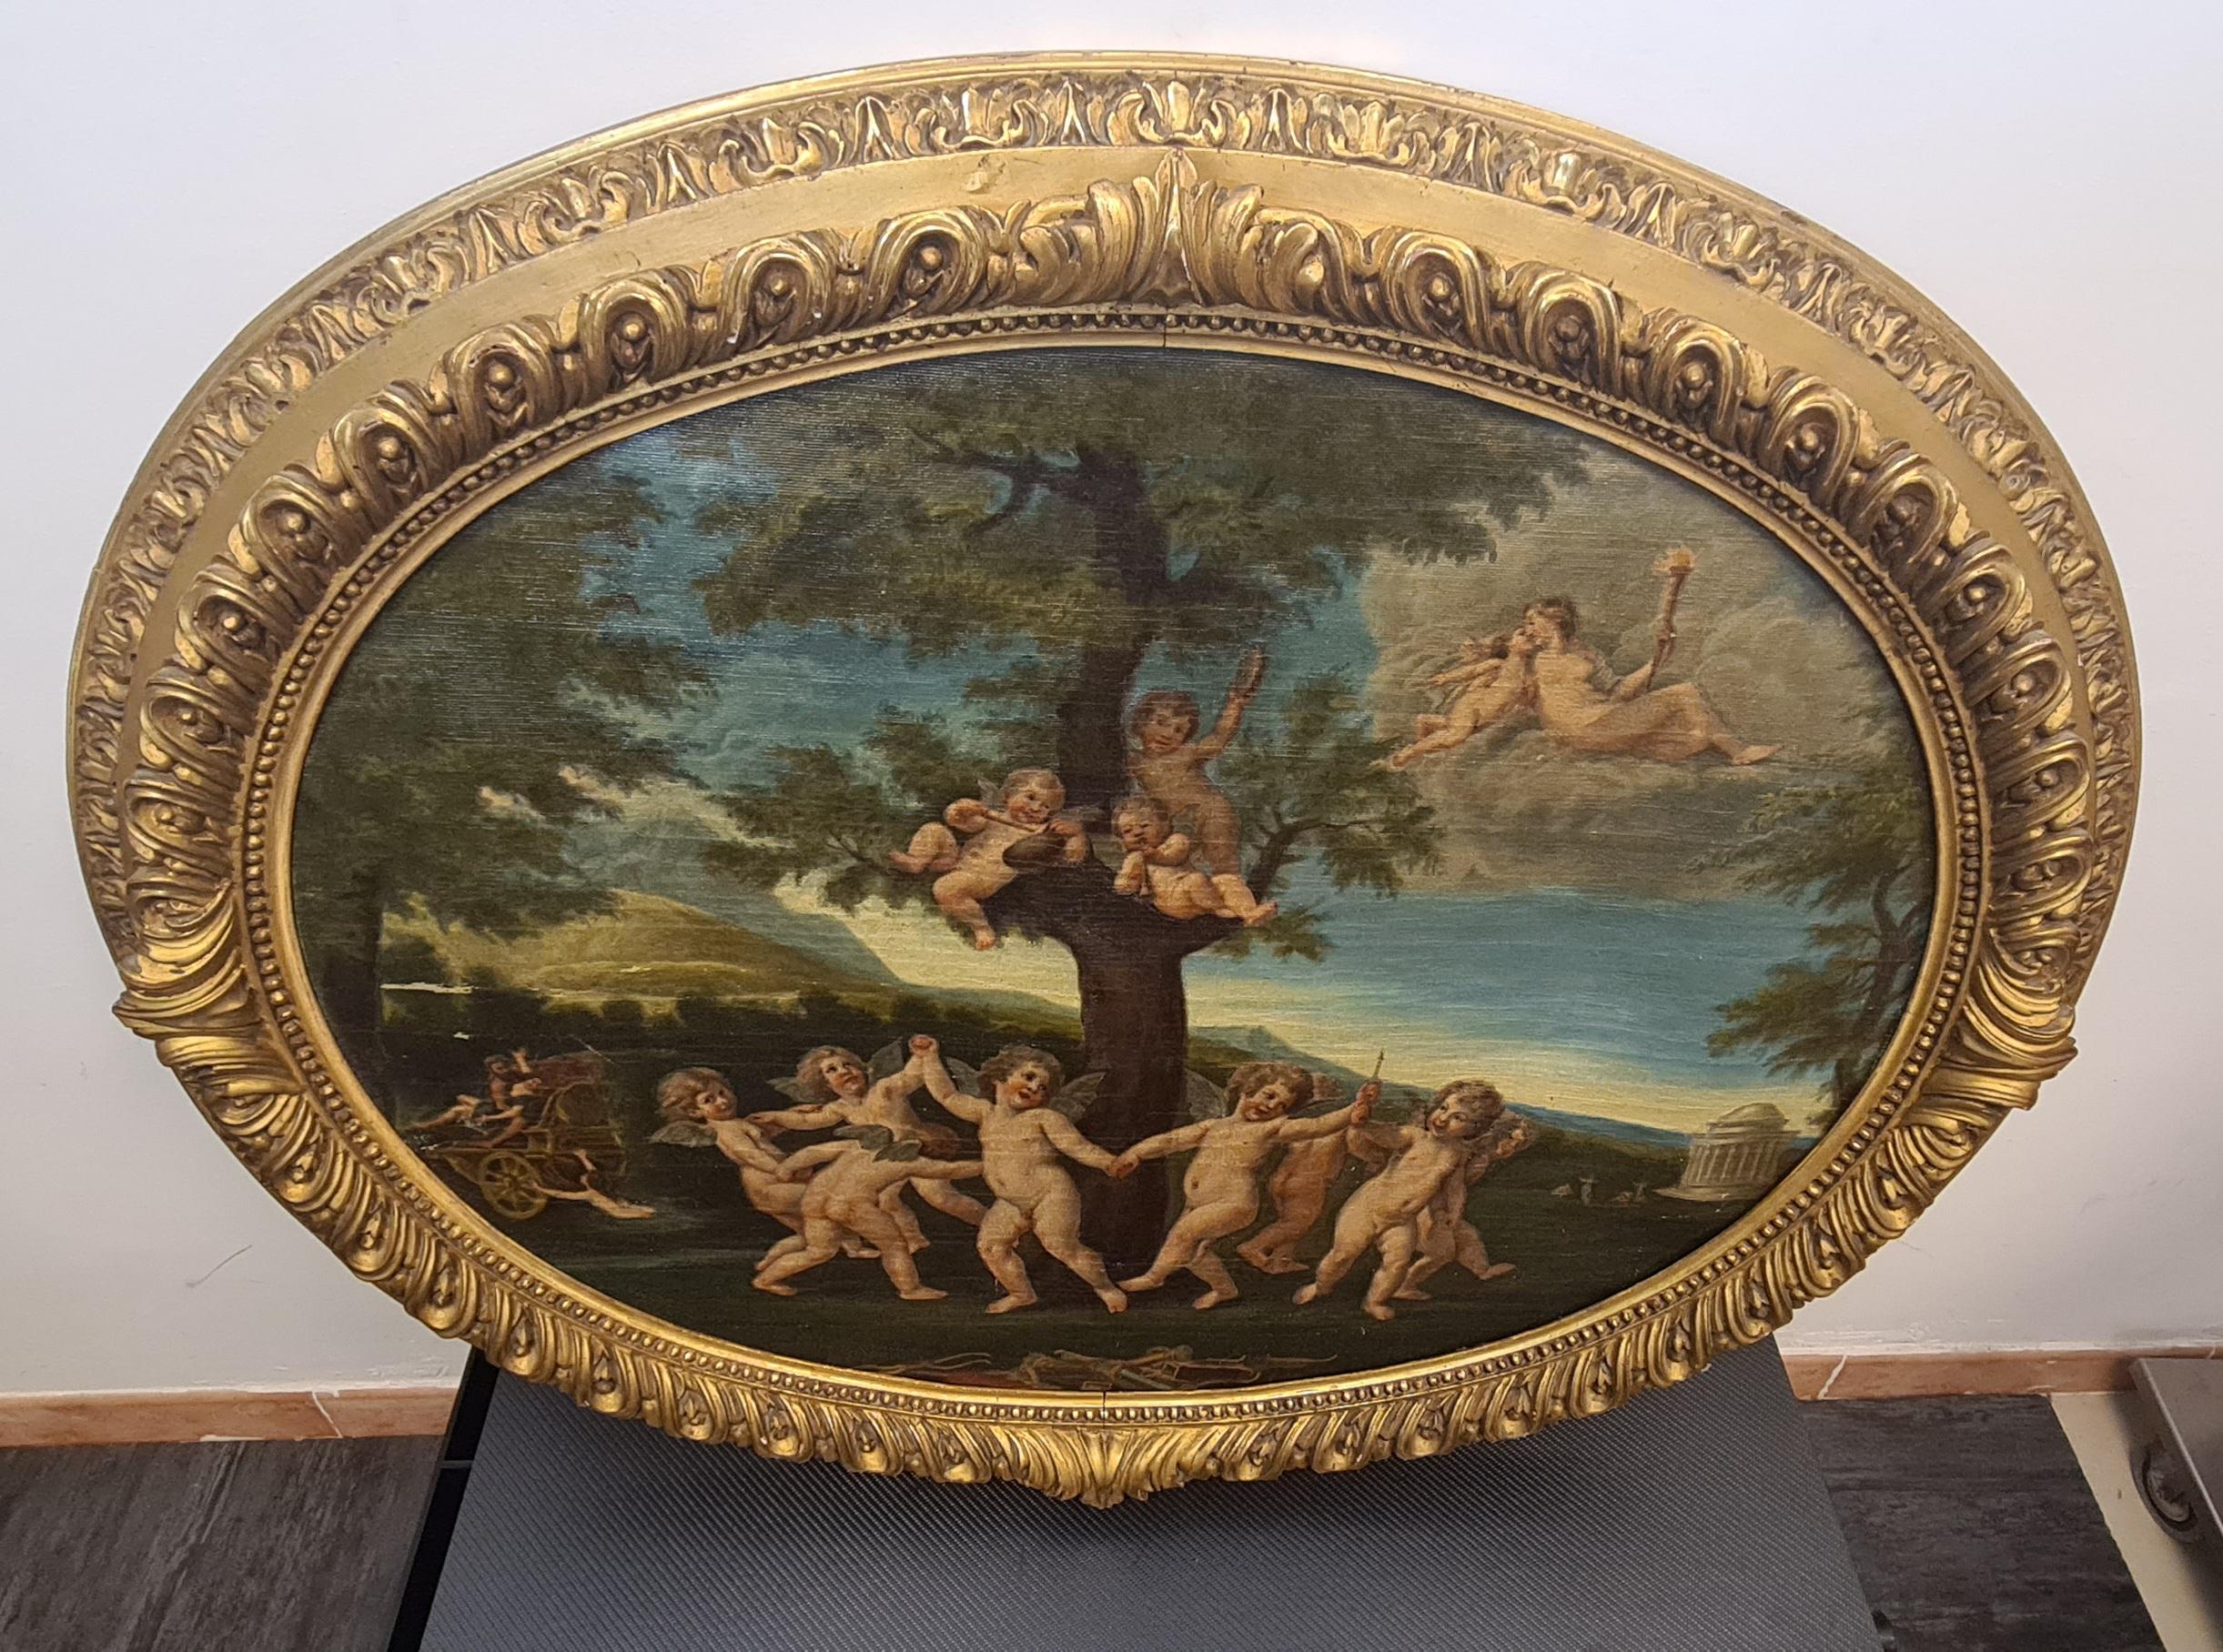 Peinture ovale représentant la danse des Cupidons.

Peinture à l'huile romantique sur toile de forme ovale avec un cadre en feuilles d'or.

Cette peinture extraordinairement raffinée et très décorative représente une allégorie du XVIIIe siècle.

Au